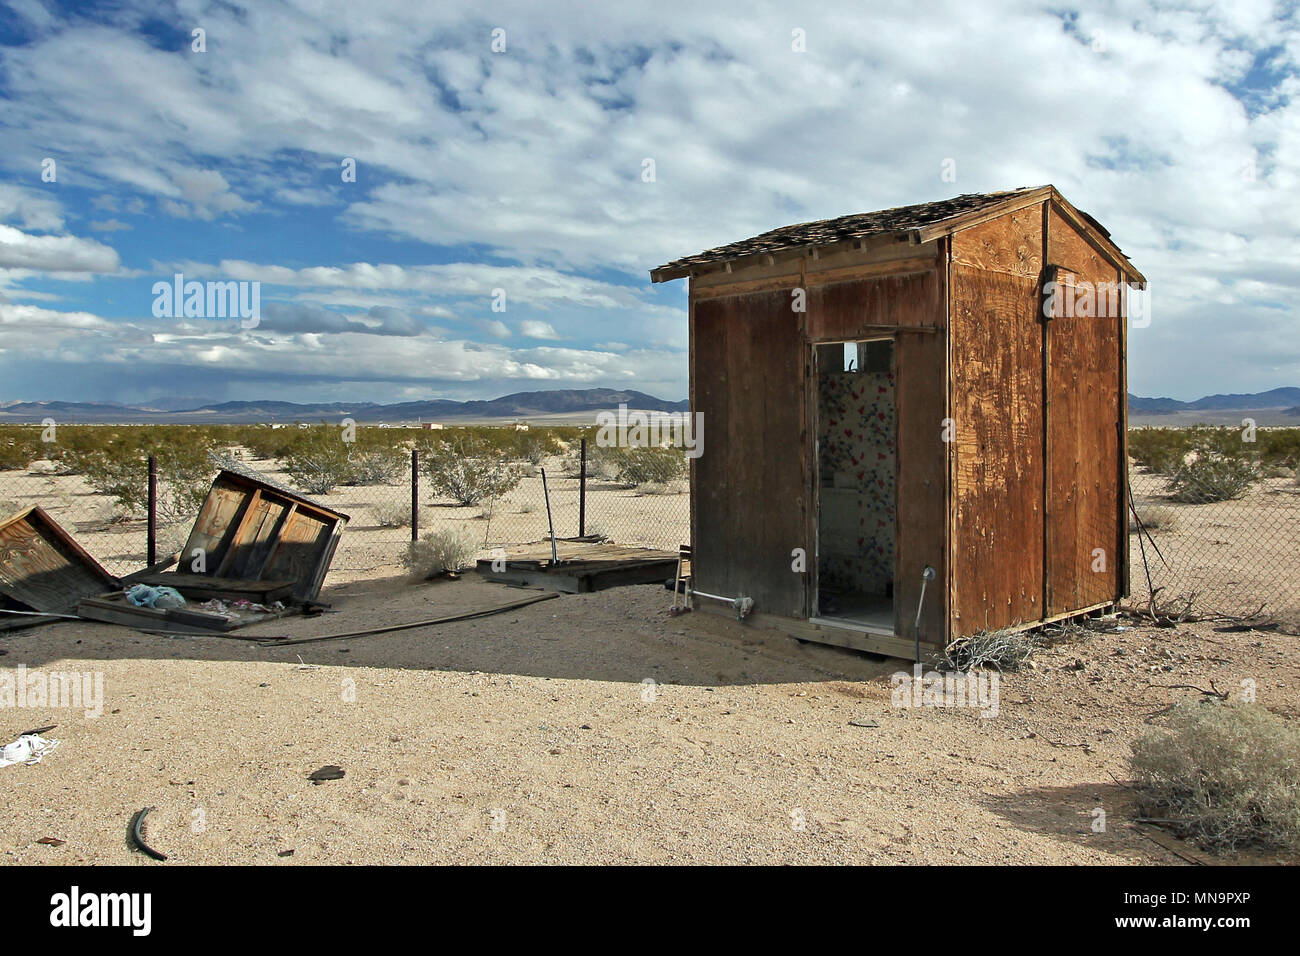 Old Wooden outhouse, abandonnés et survécu, une ruine, dans le désert de Mojave, le haut désert, me demande Valley, Californie, USA. Banque D'Images